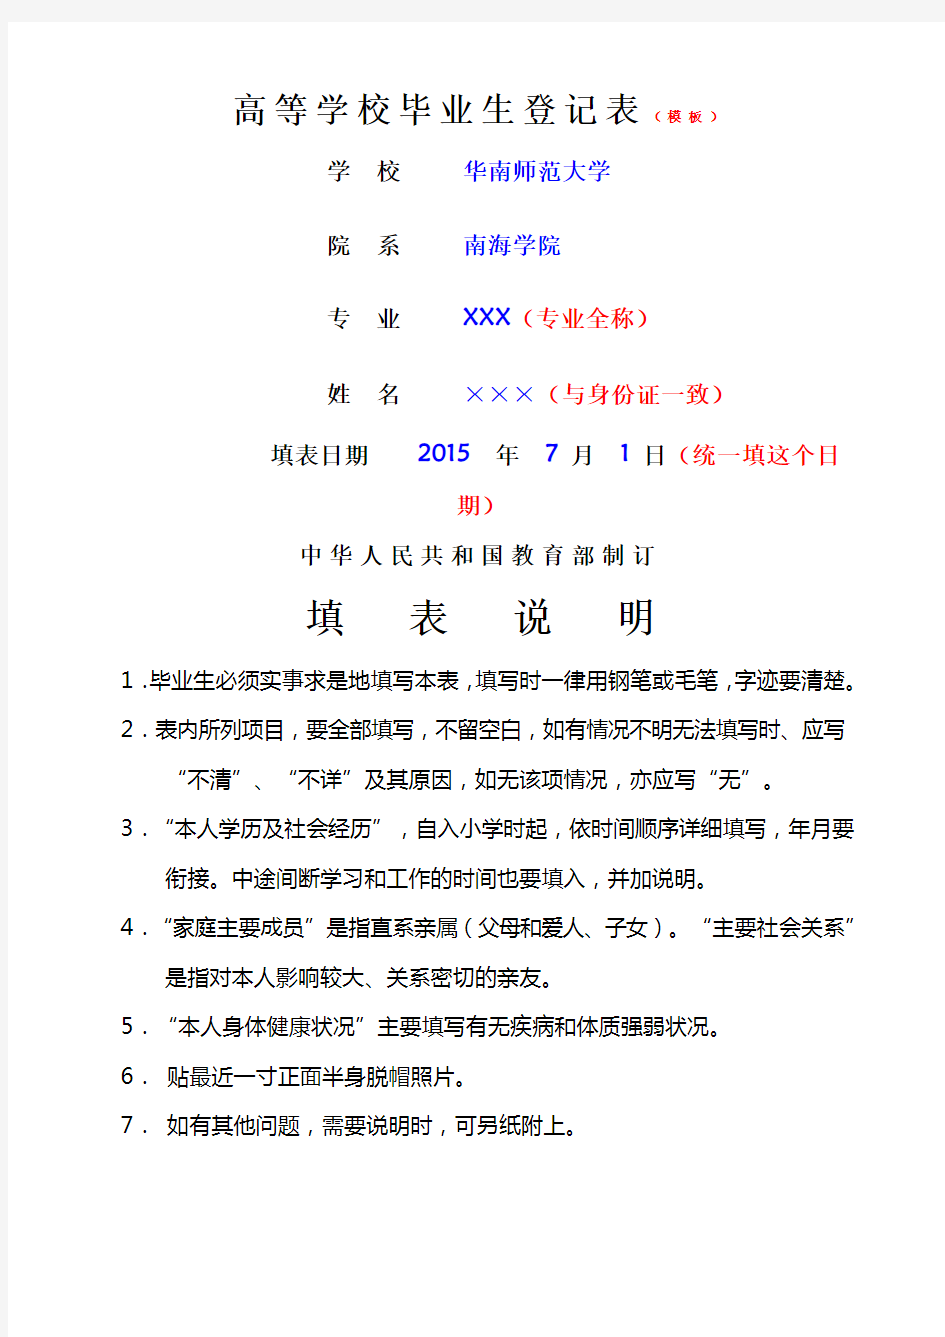 广东省普通高等学校毕业生登记表填写示范模板